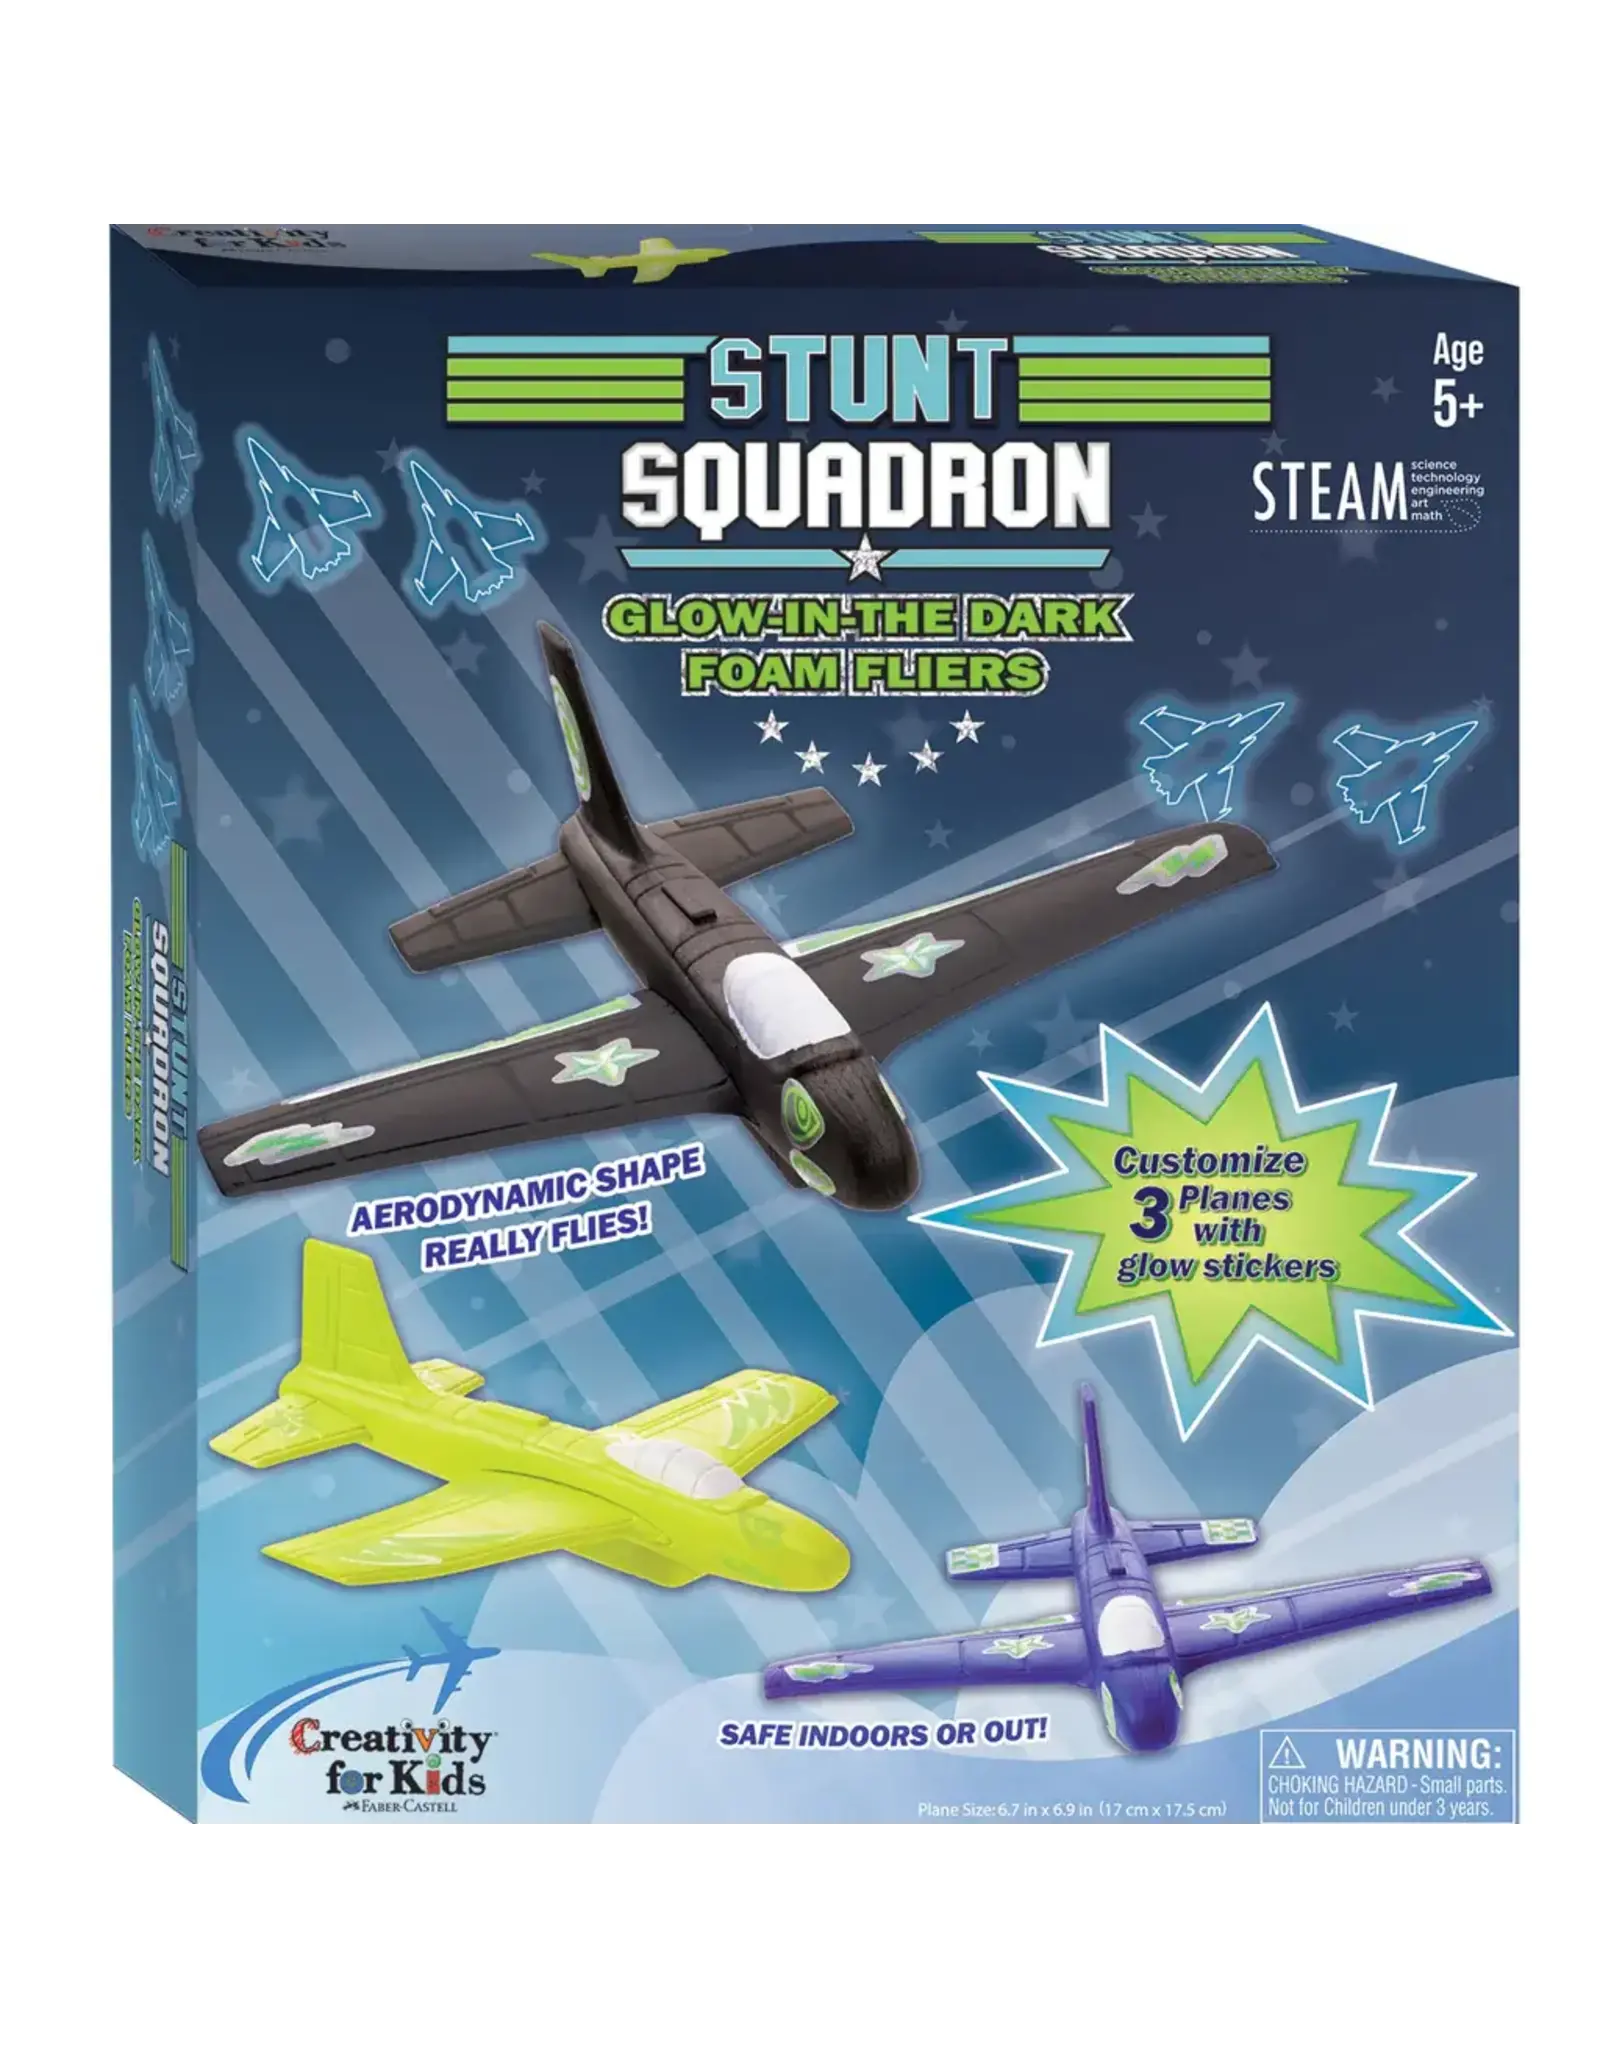 Creativity For Kids Stunt Squadron Glow in the Dark Foam Fliers